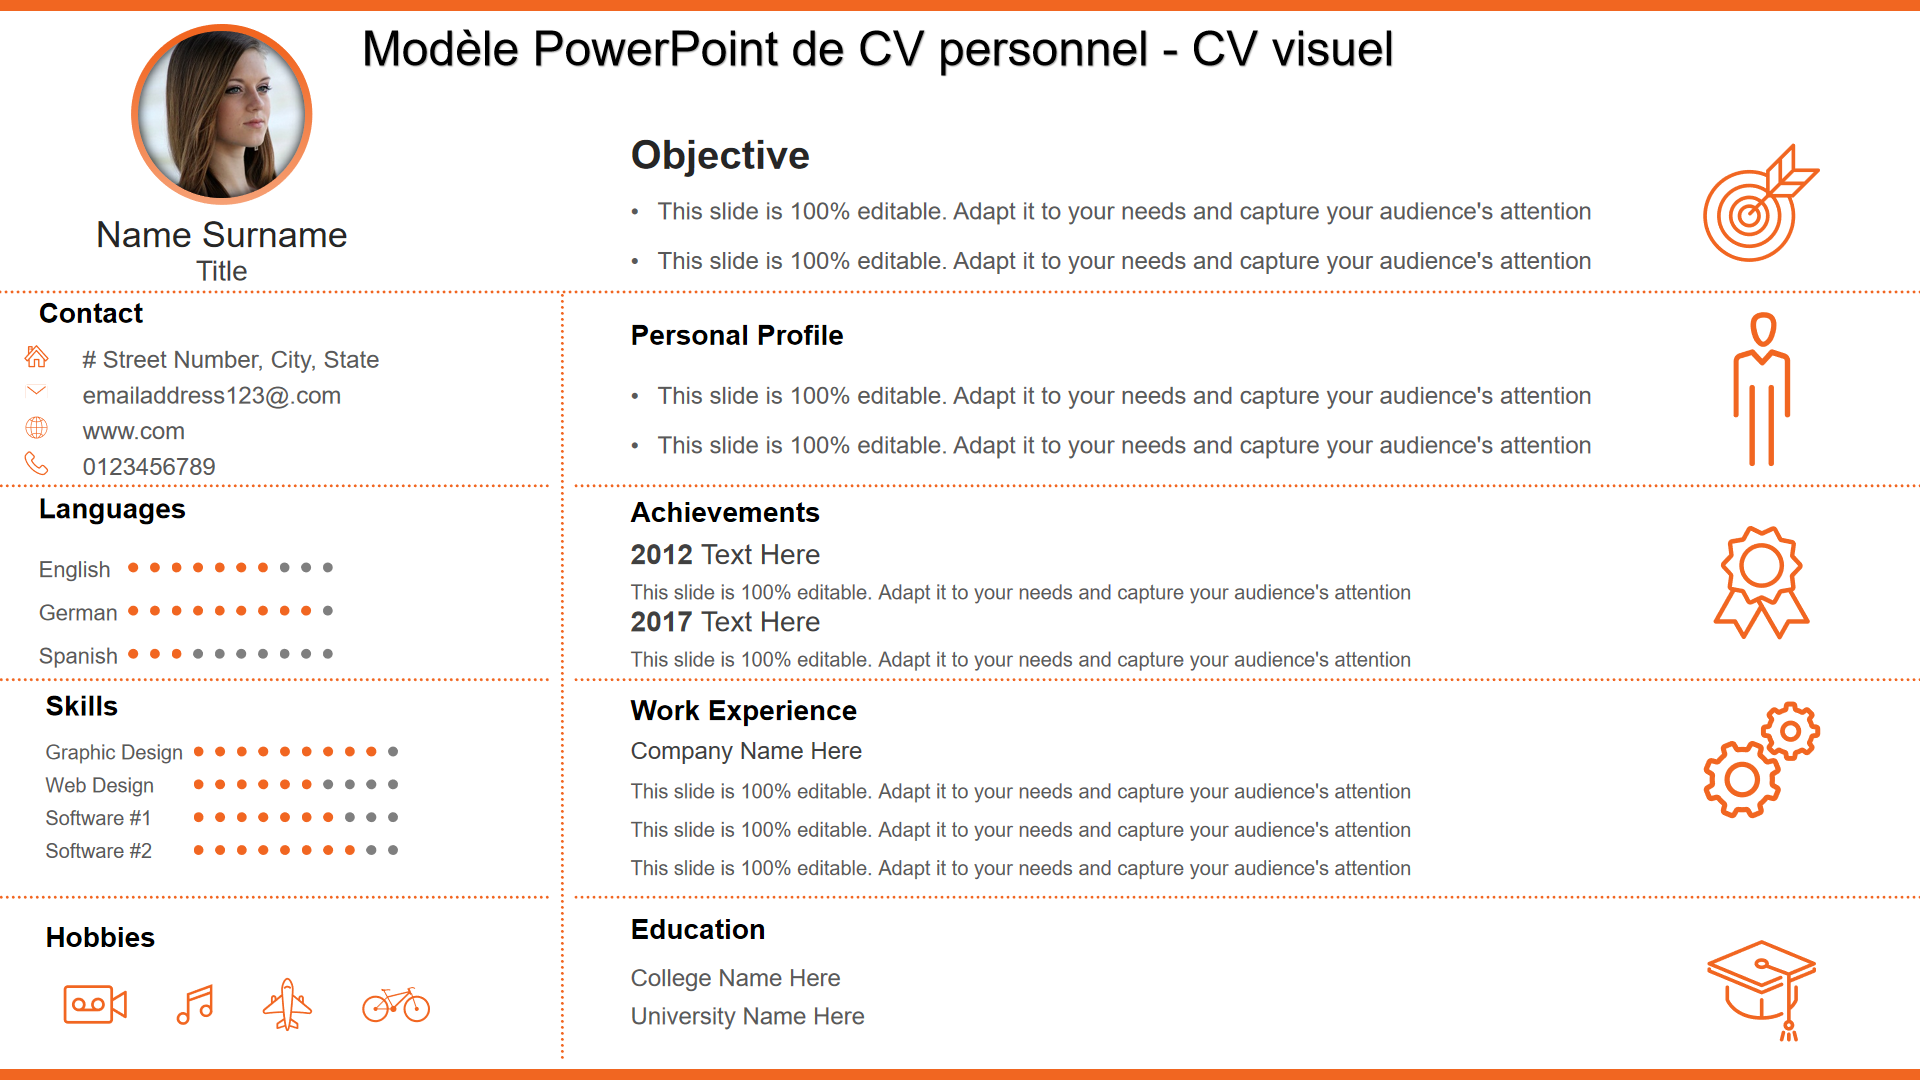 Modèle PowerPoint de CV personnel - CV visuel